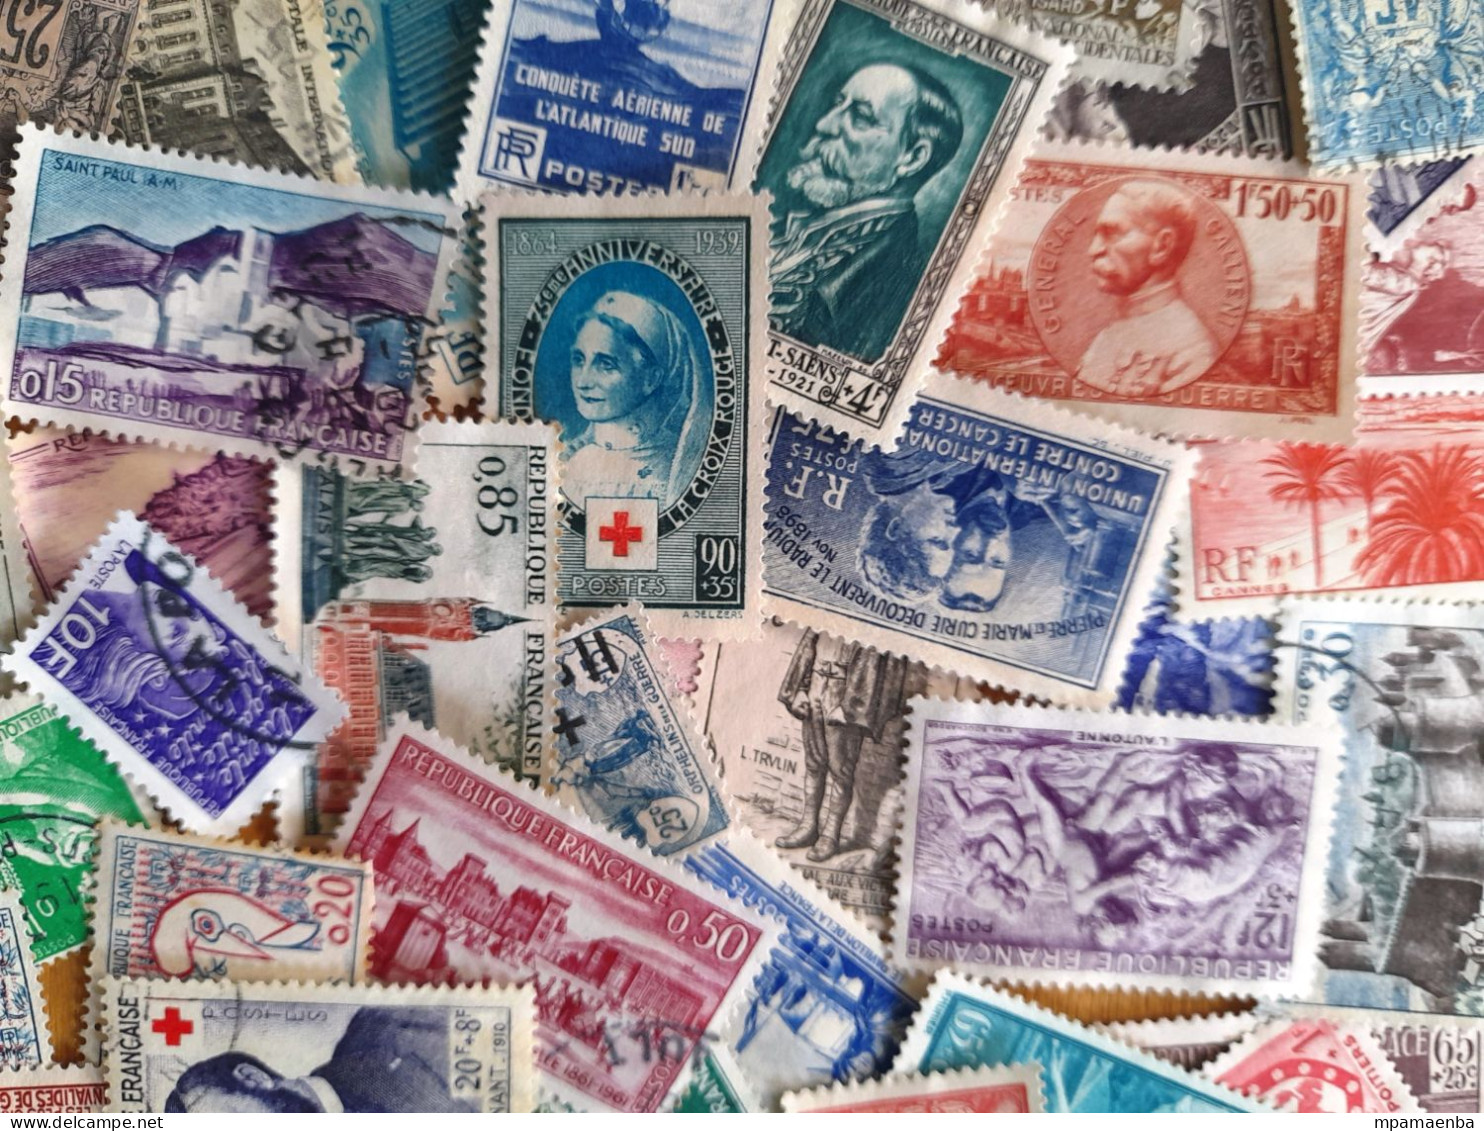 800 timbres français, oblitérés (60%), 40 % de timbres neufs (* *, * , NSG), lot très dense à dominante semi-classique.